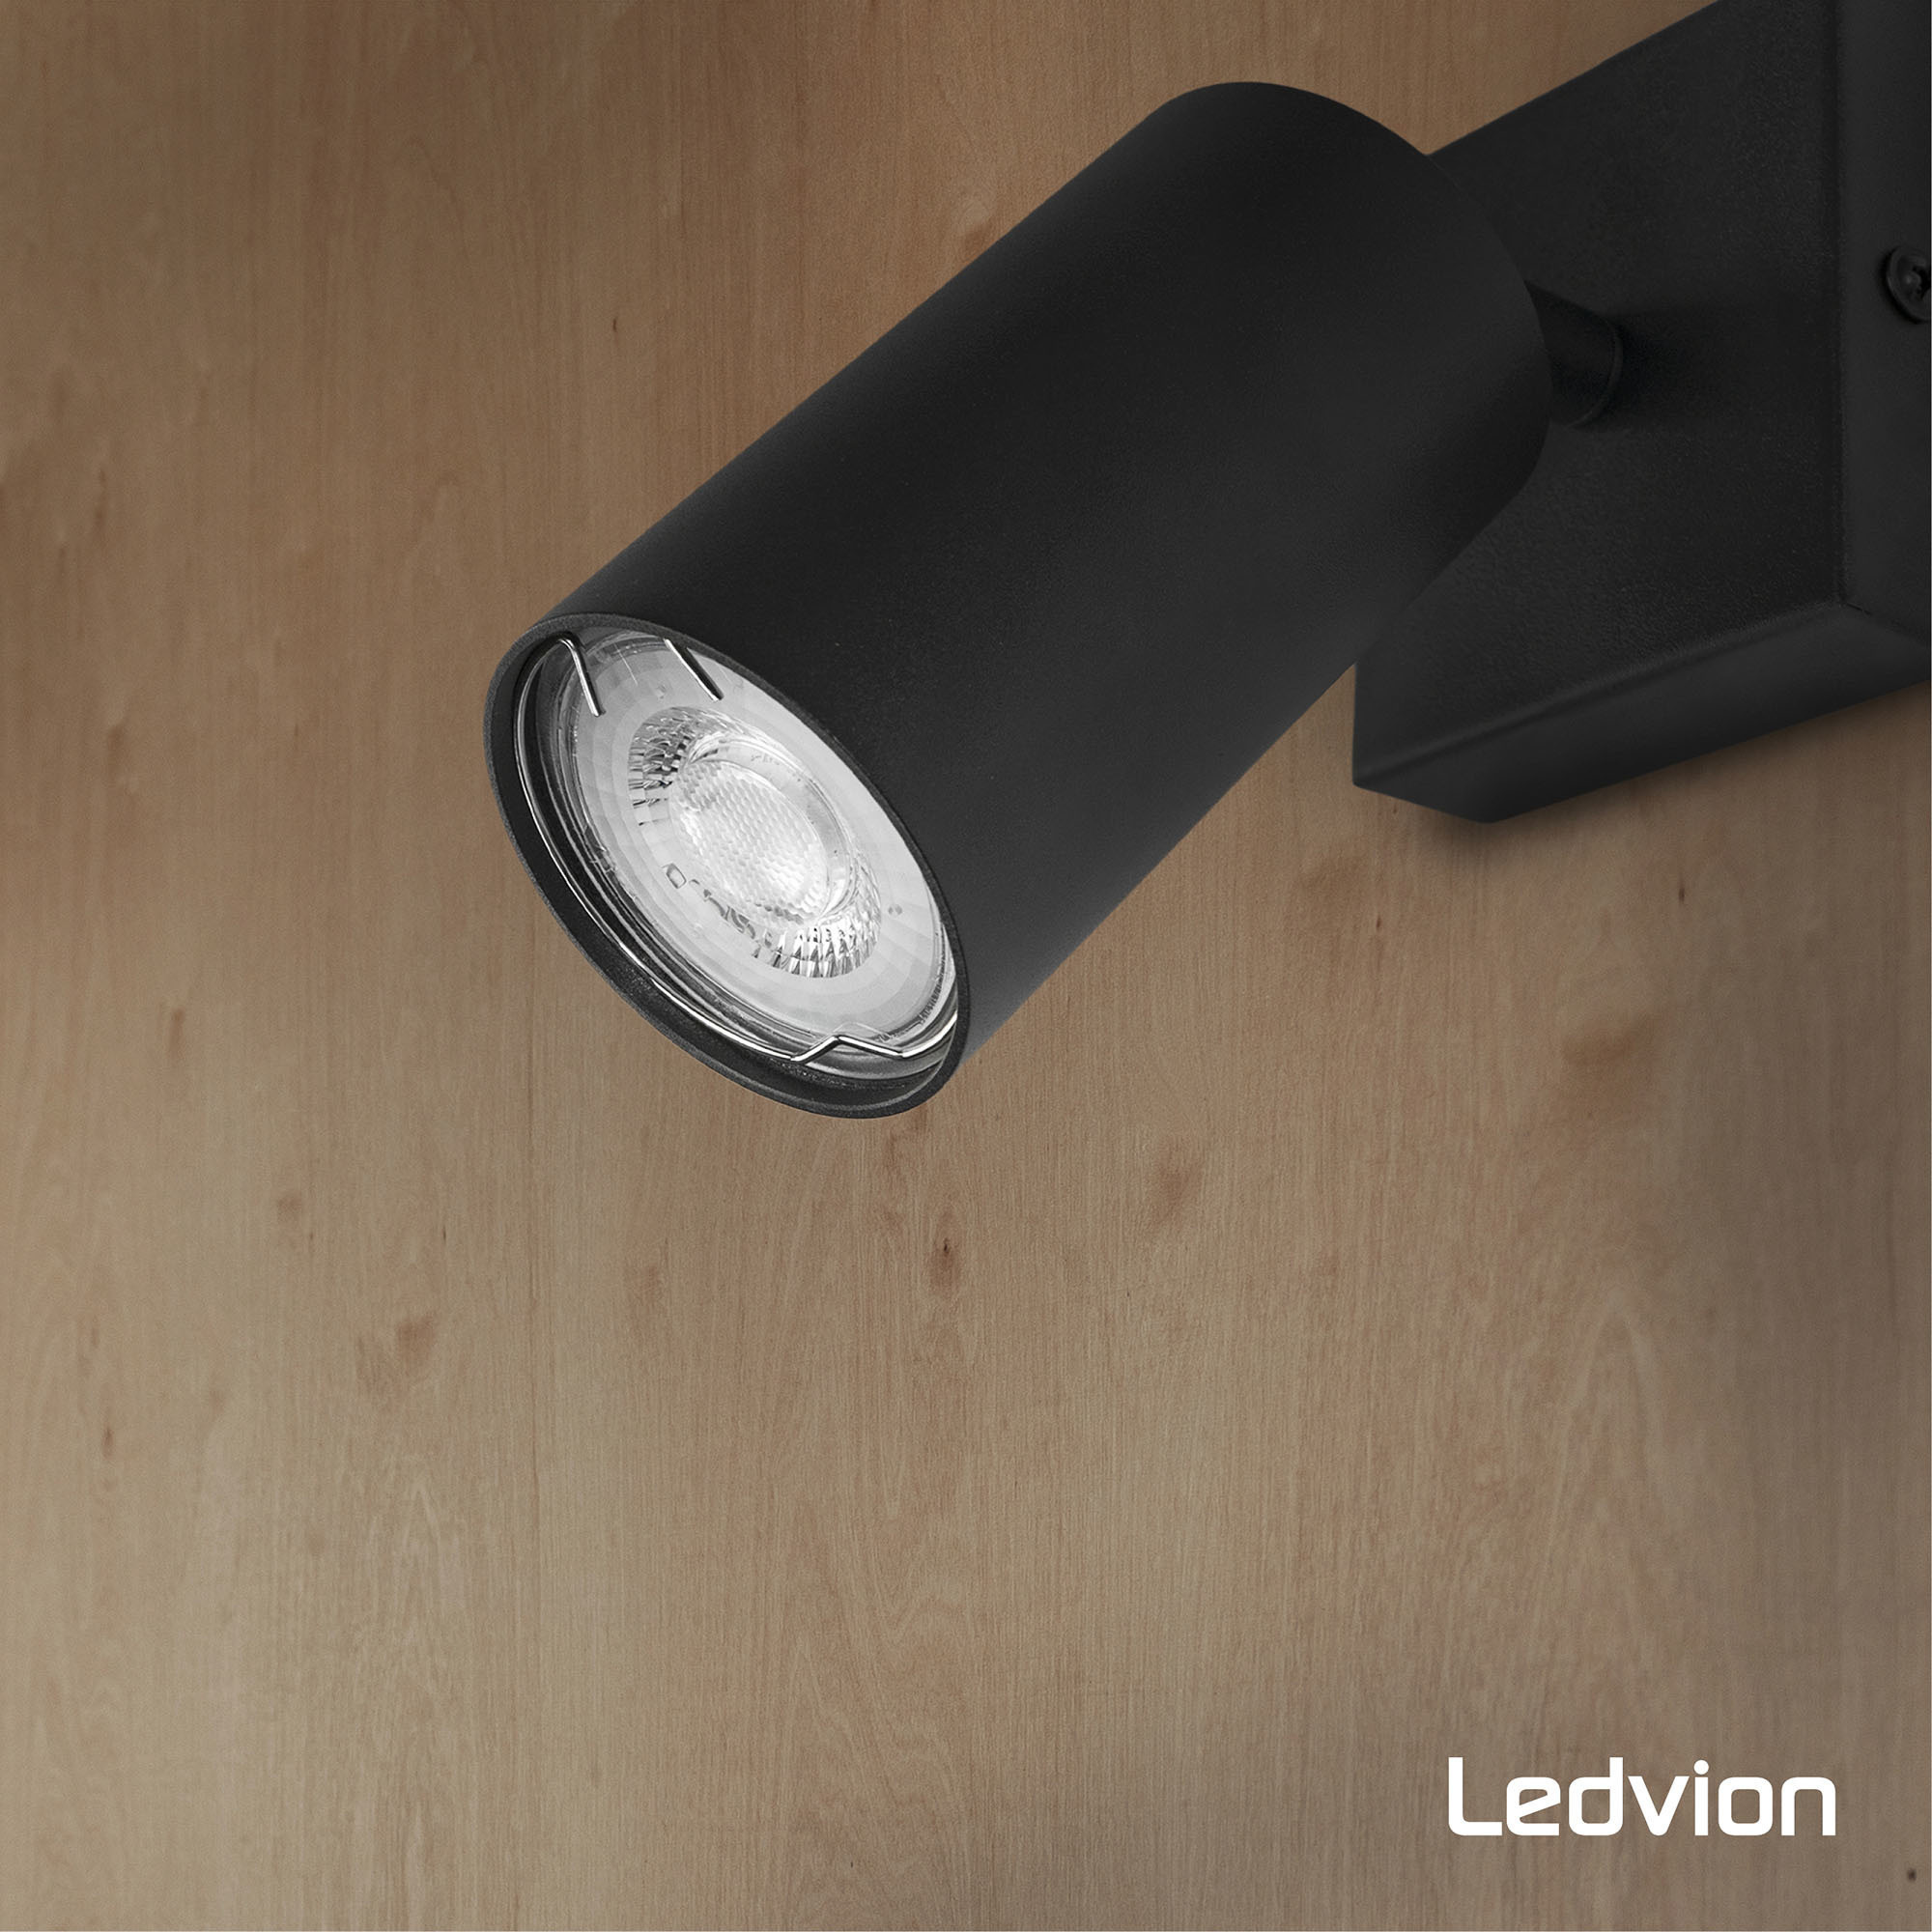 10x Ledvion Dimmbarer GU10 LED Lampe - 6,5W - 3000K - Vorteilpack -  Beleuchtungonline.de